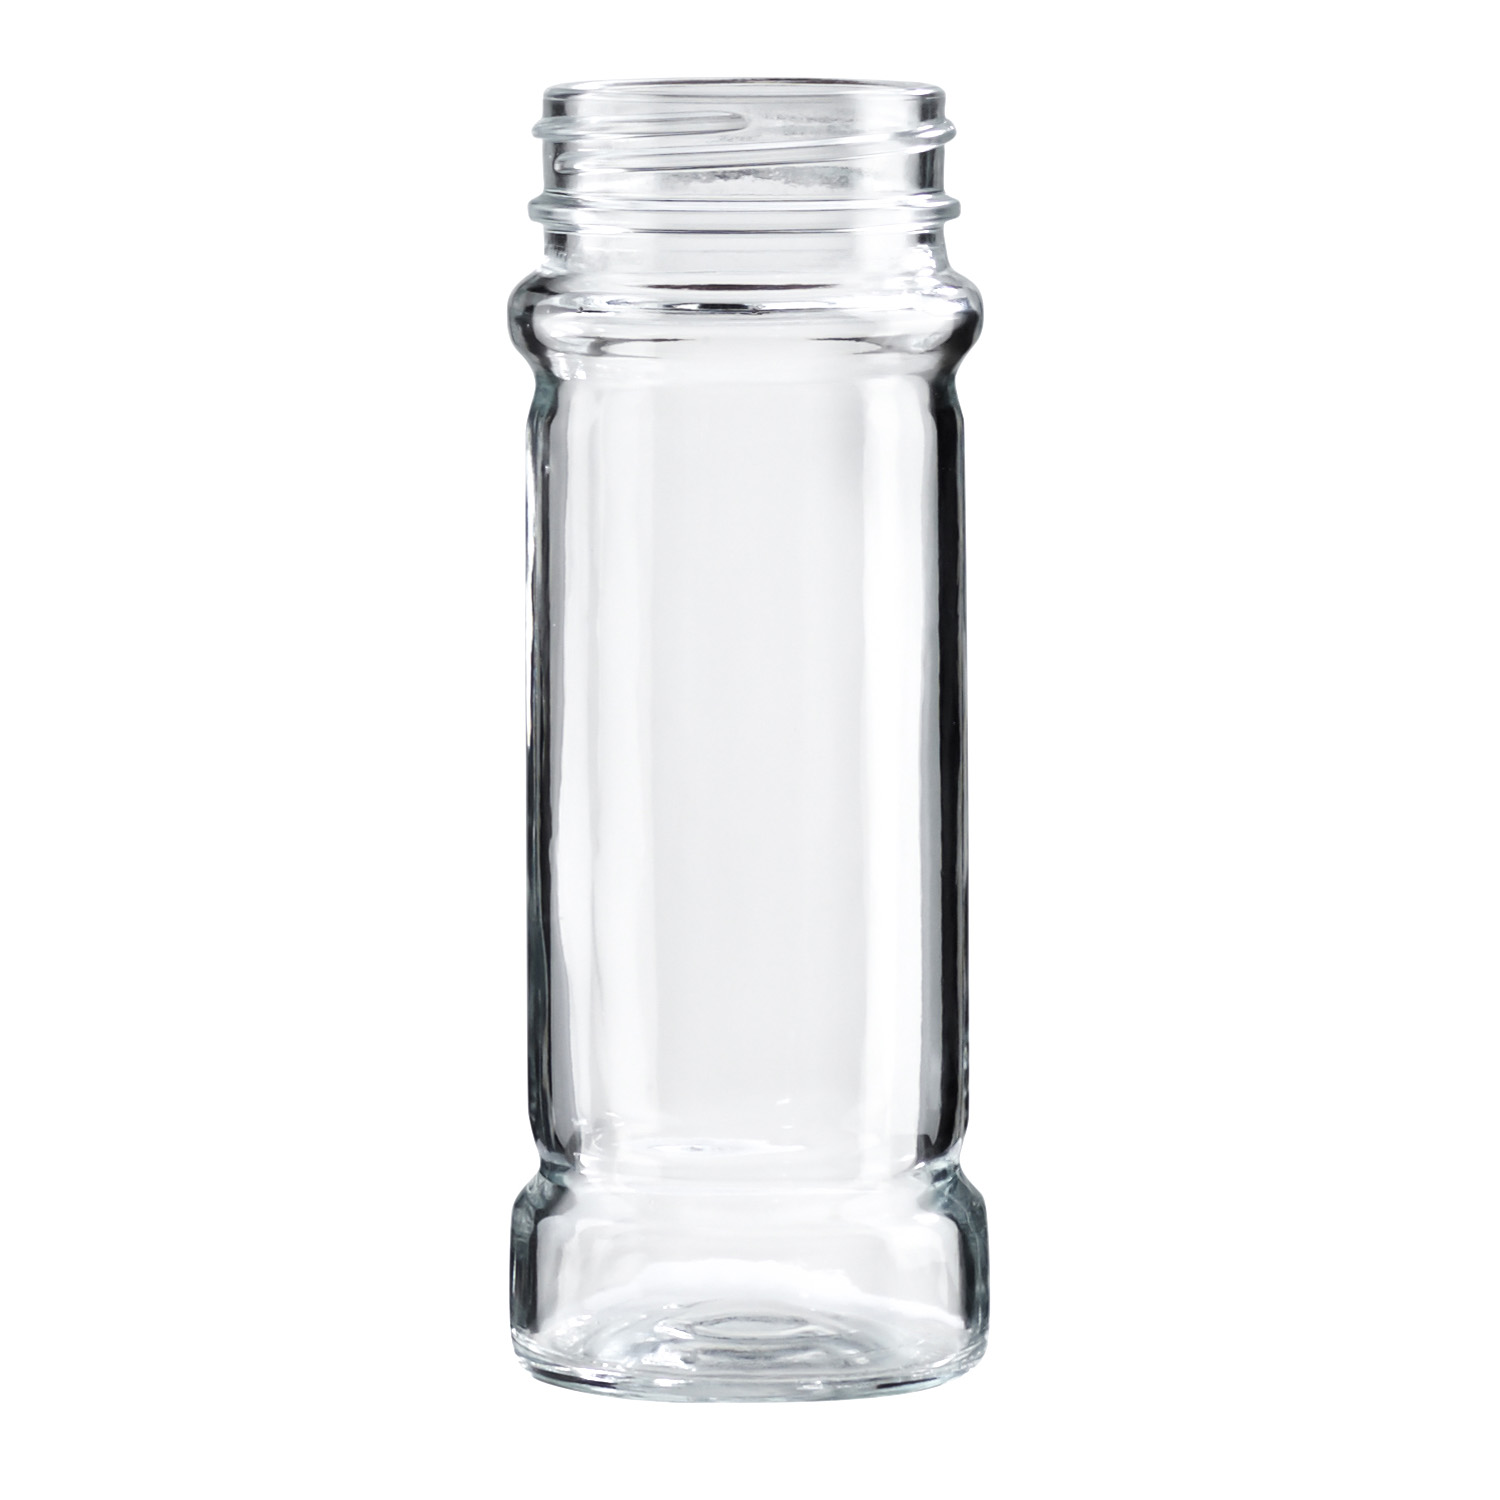 6x Gewürzglas 100ml mit Streuer,  kleines leeres Glas zum Befüllen für Kräutersalze oder Gewürze, mit Schraubverschluss